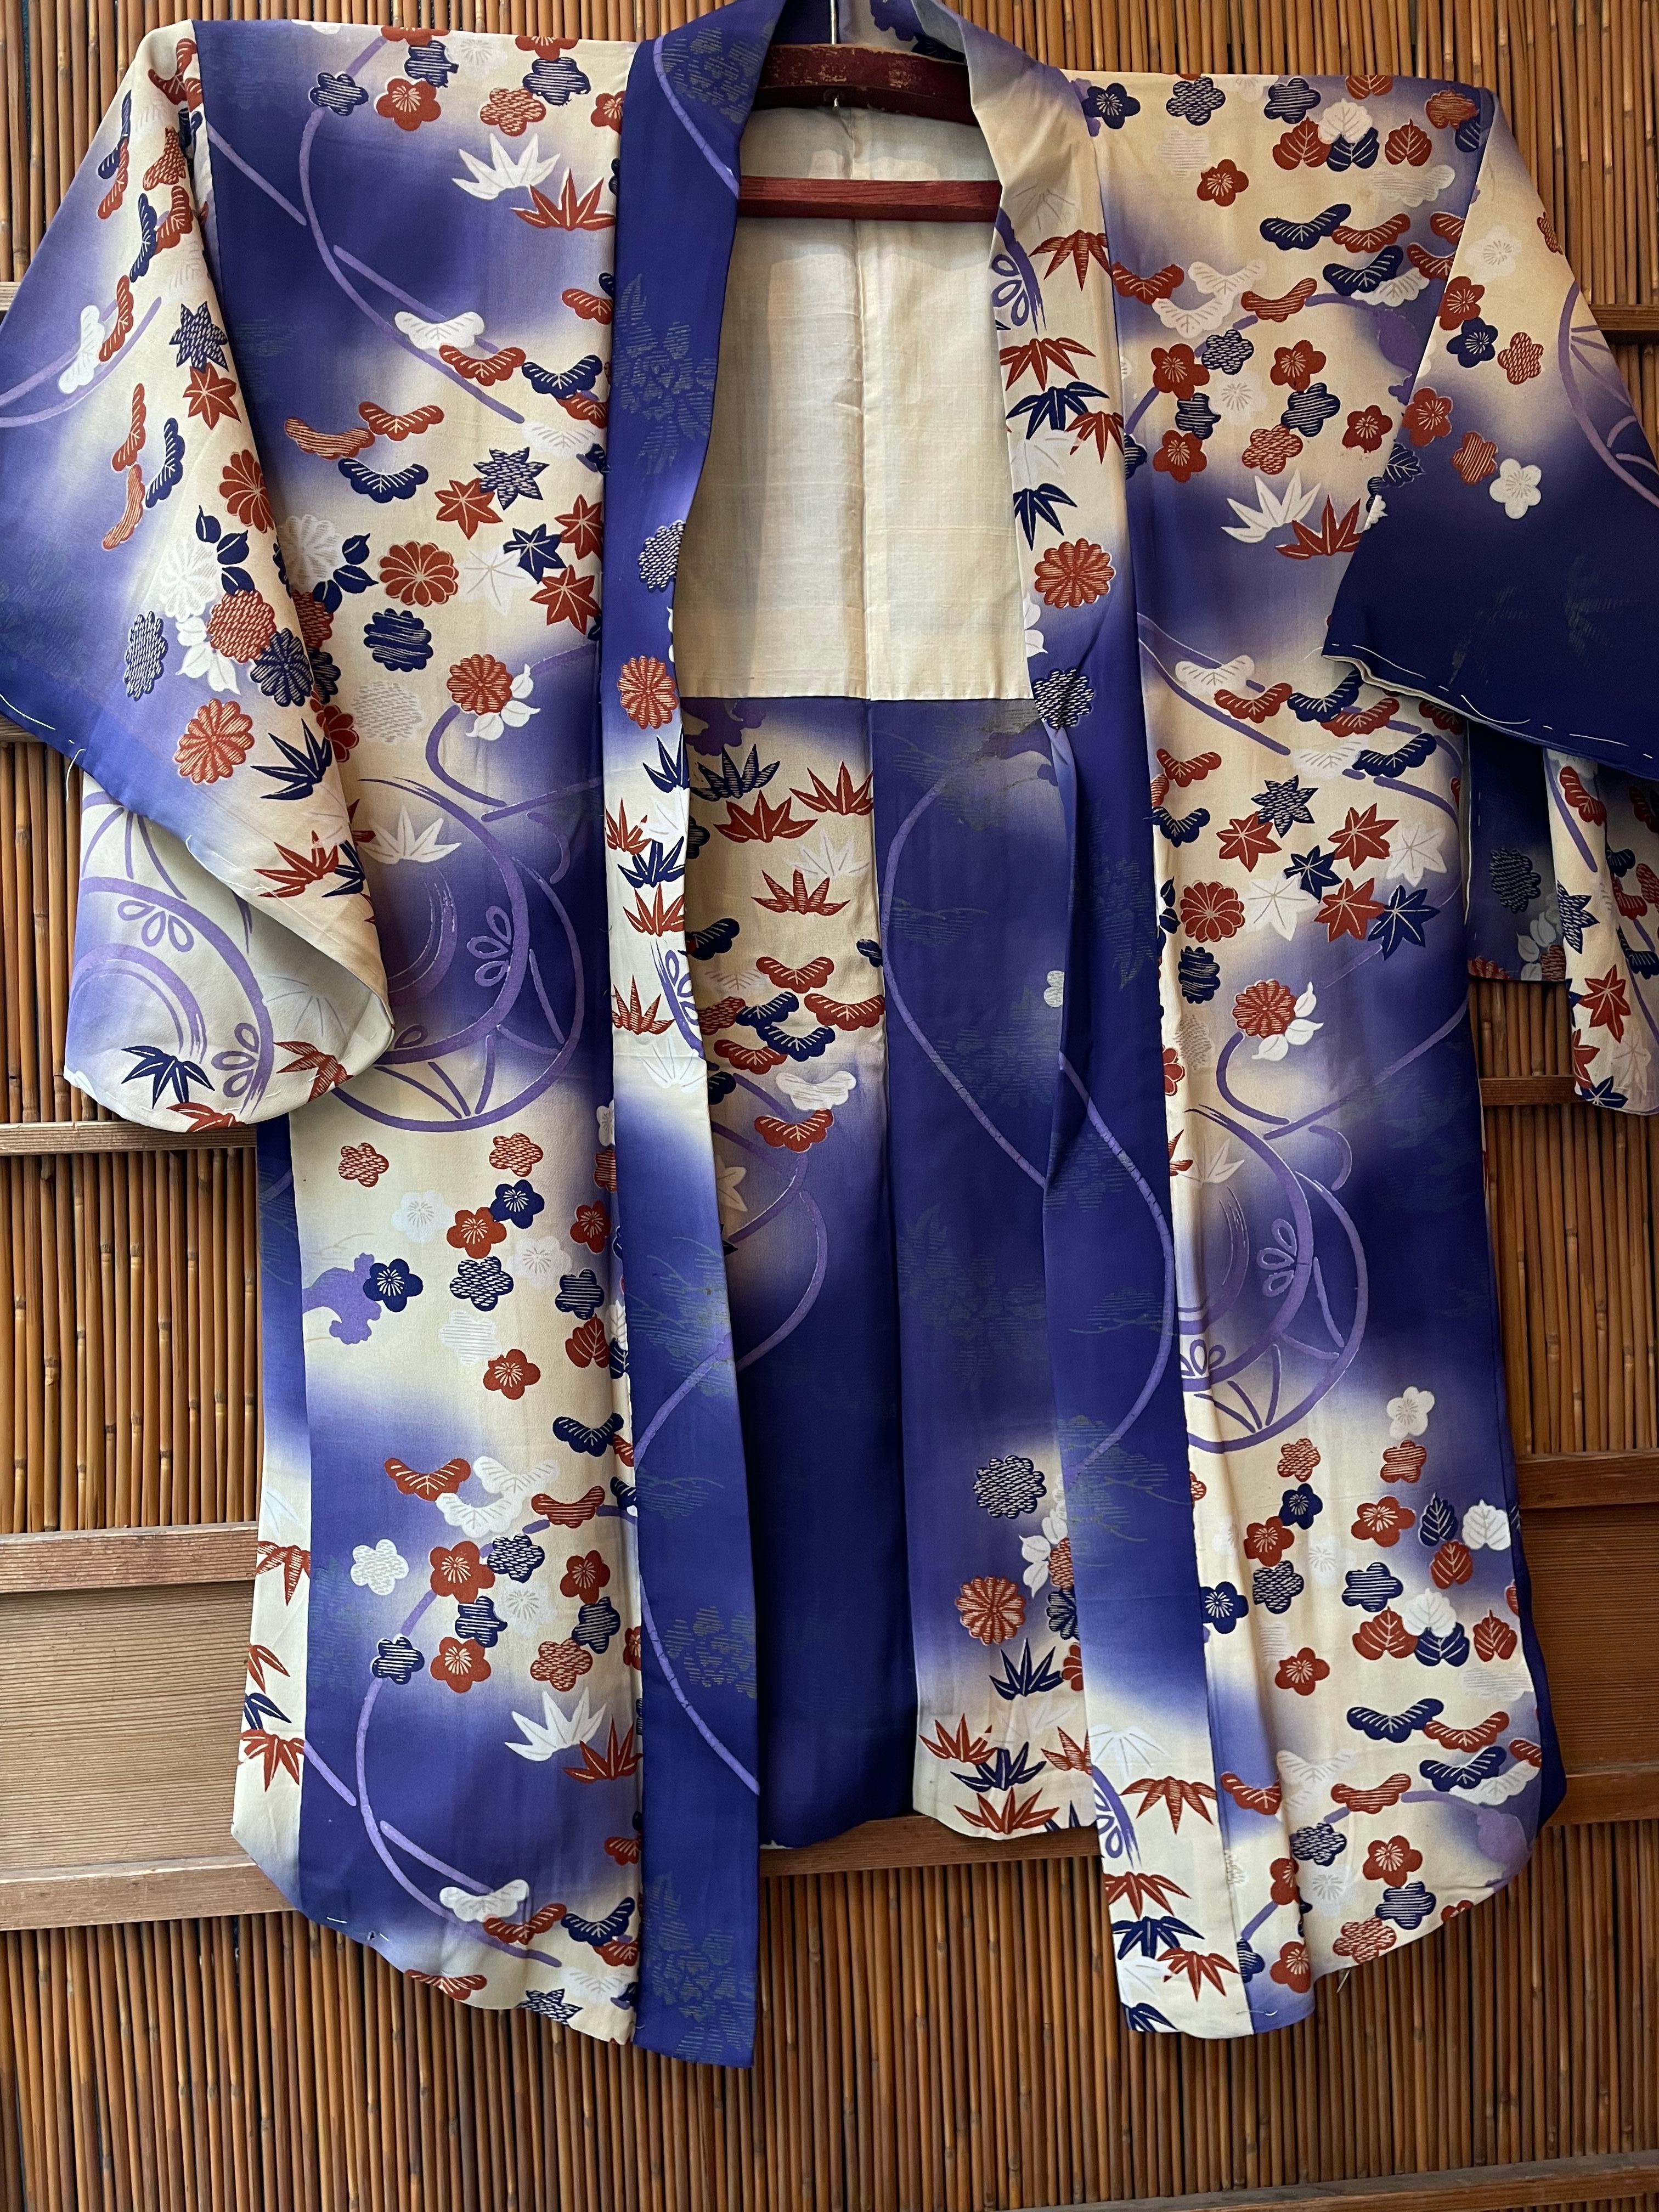 Il s'agit d'une veste en soie fabriquée au Japon.
Il a été fabriqué à l'époque Showa, dans les années 1950.

Le haori est une veste traditionnelle japonaise portée par-dessus un kimono. Ressemblant à un kimono raccourci dont les panneaux avant ne se